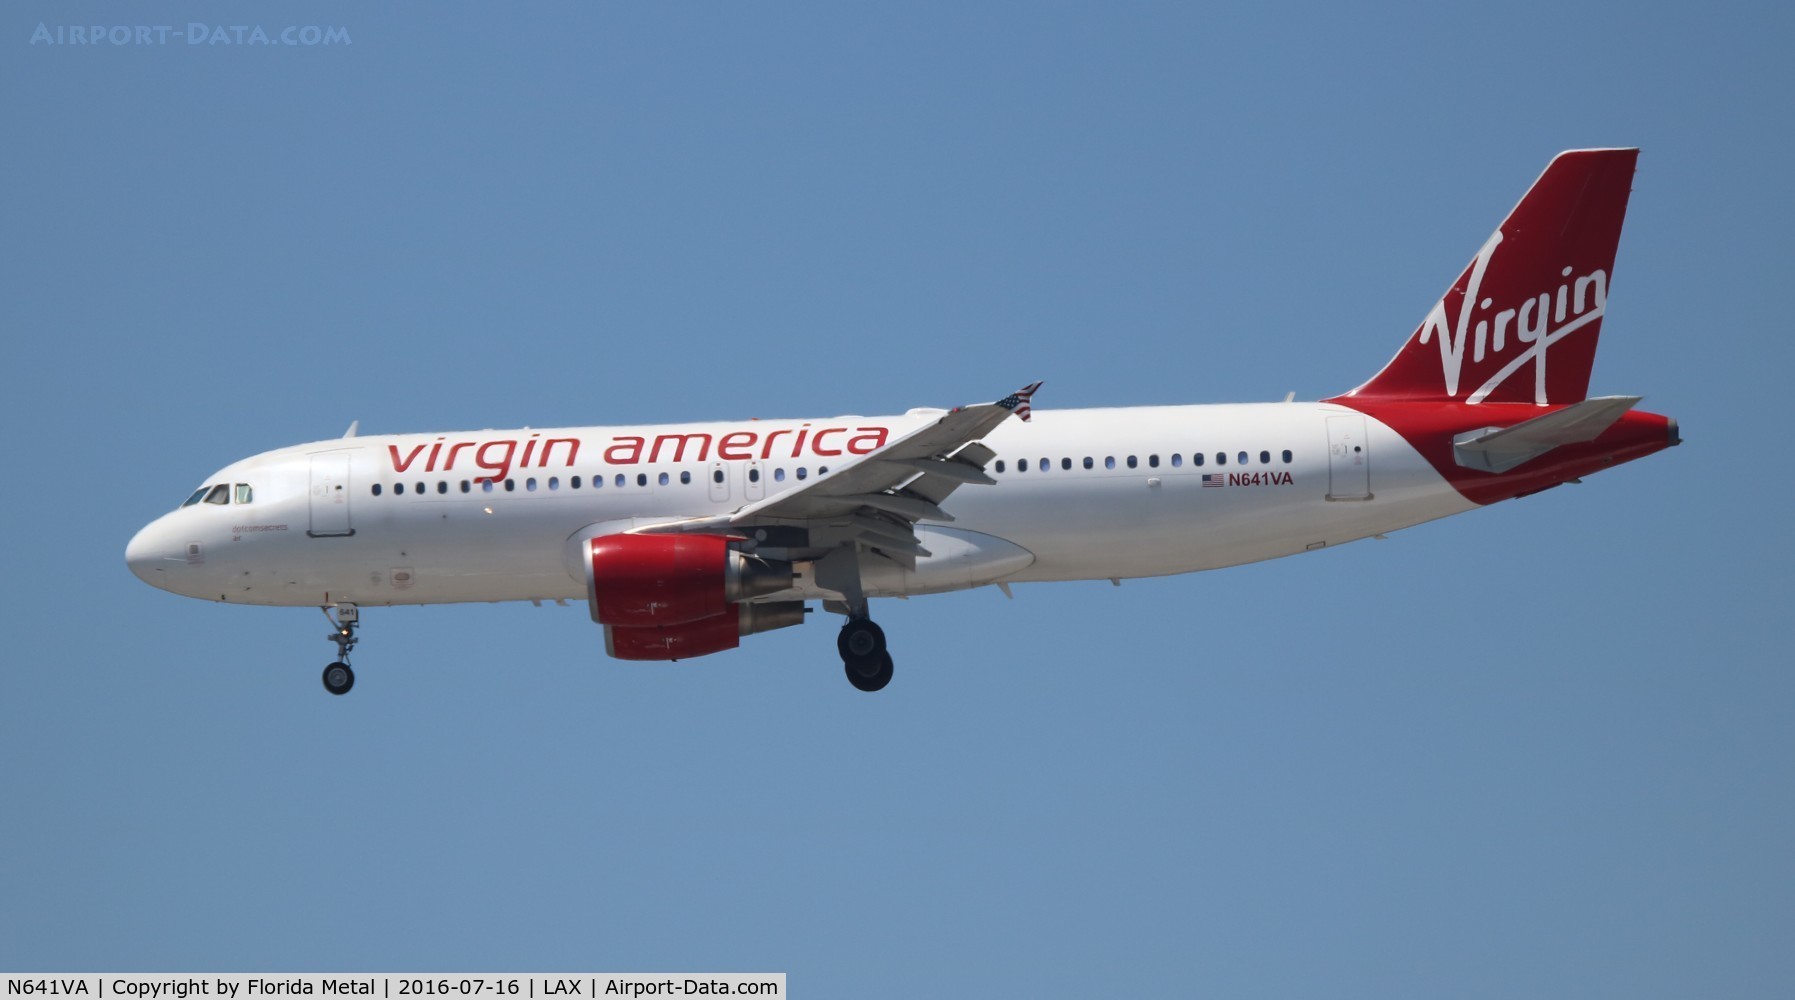 N641VA, 2008 Airbus A320-214 C/N 3656, Virgin America